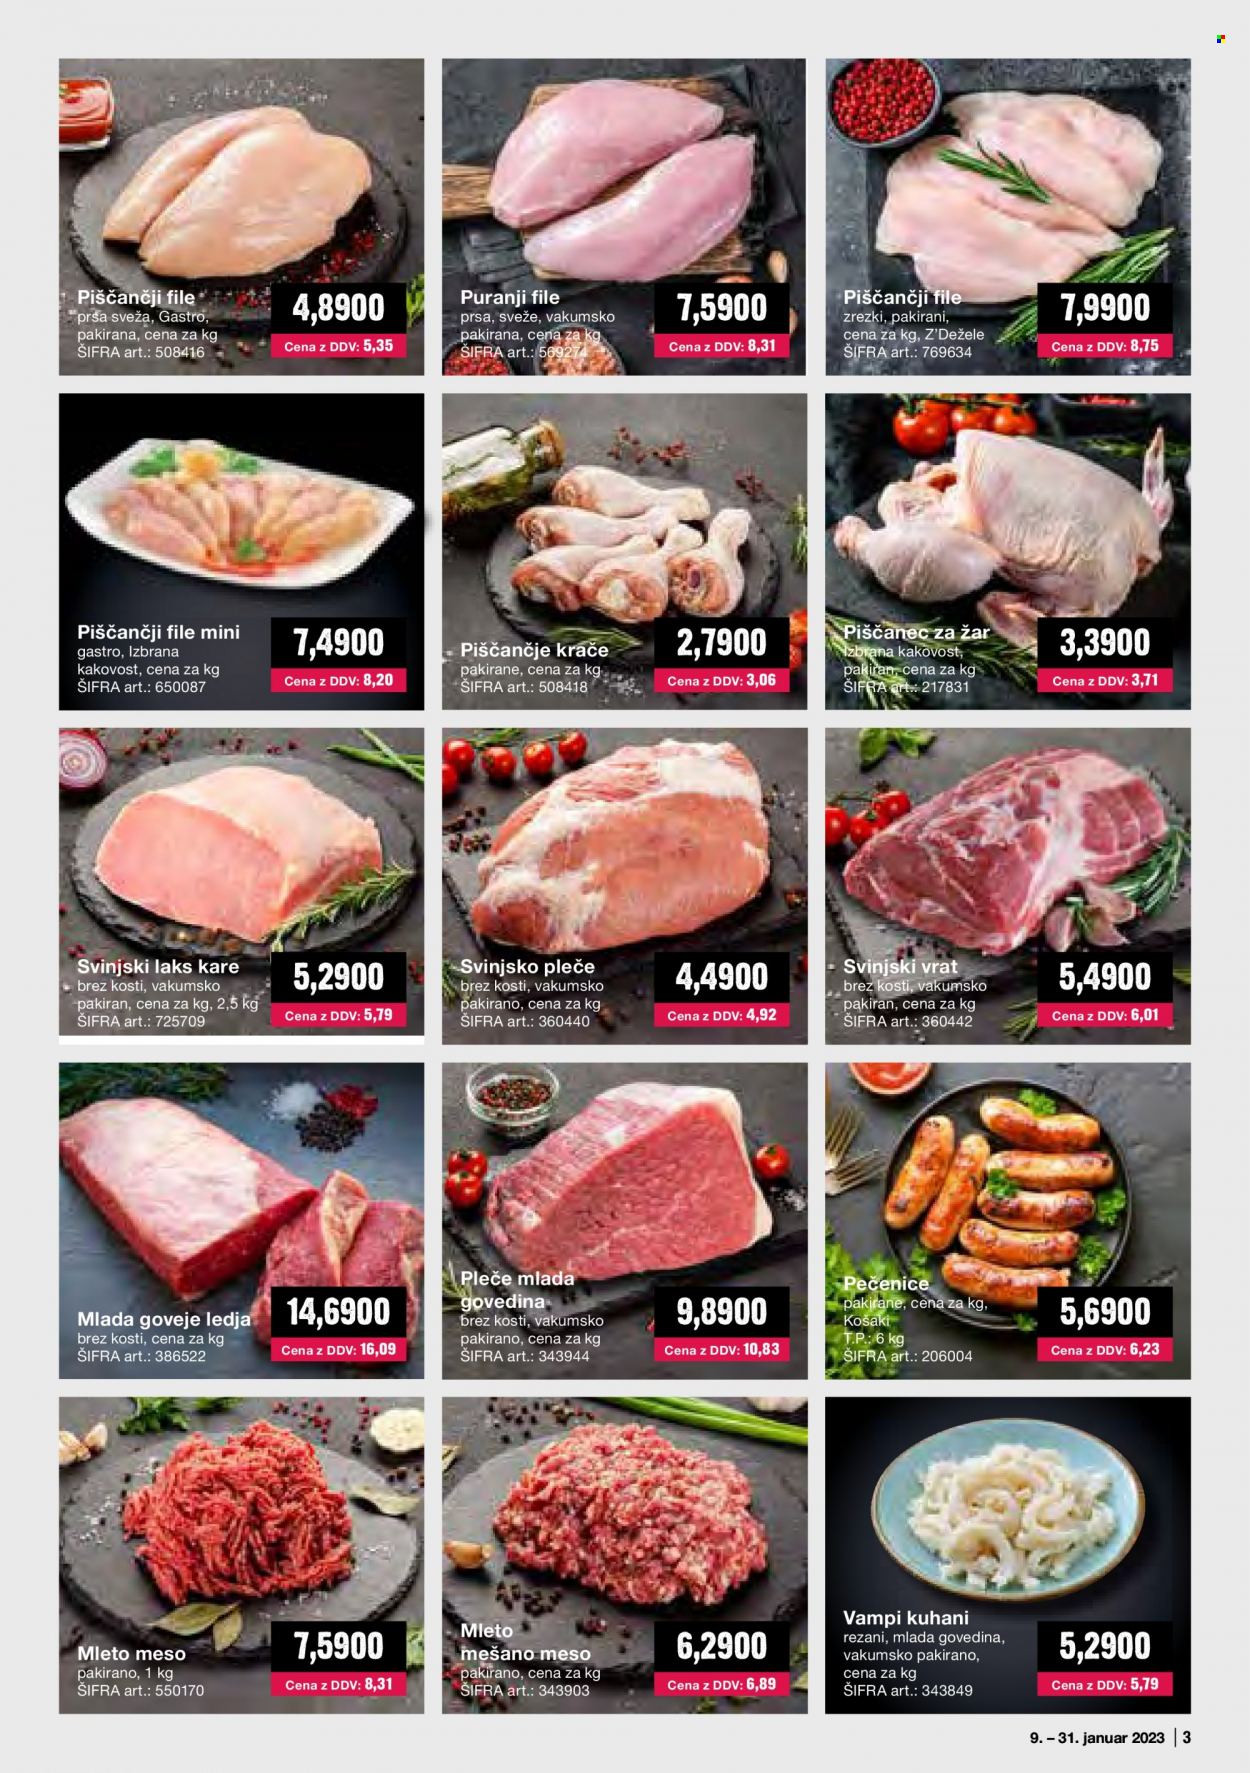 thumbnail - Mercator Cash & Carry katalog - 1.1.2023 - 31.1.2023 - Ponudba izdelkov - piščančje krače, piščančji file, puranji file, puranje meso, piščanec, piščančje meso, goveje meso, ledja, pleče, mleto meso, mleto mešano meso, kare, svinjski vrat brez kosti, svinjski vrat, svinjsko pleče, svinjsko meso, grill. Stran 3.